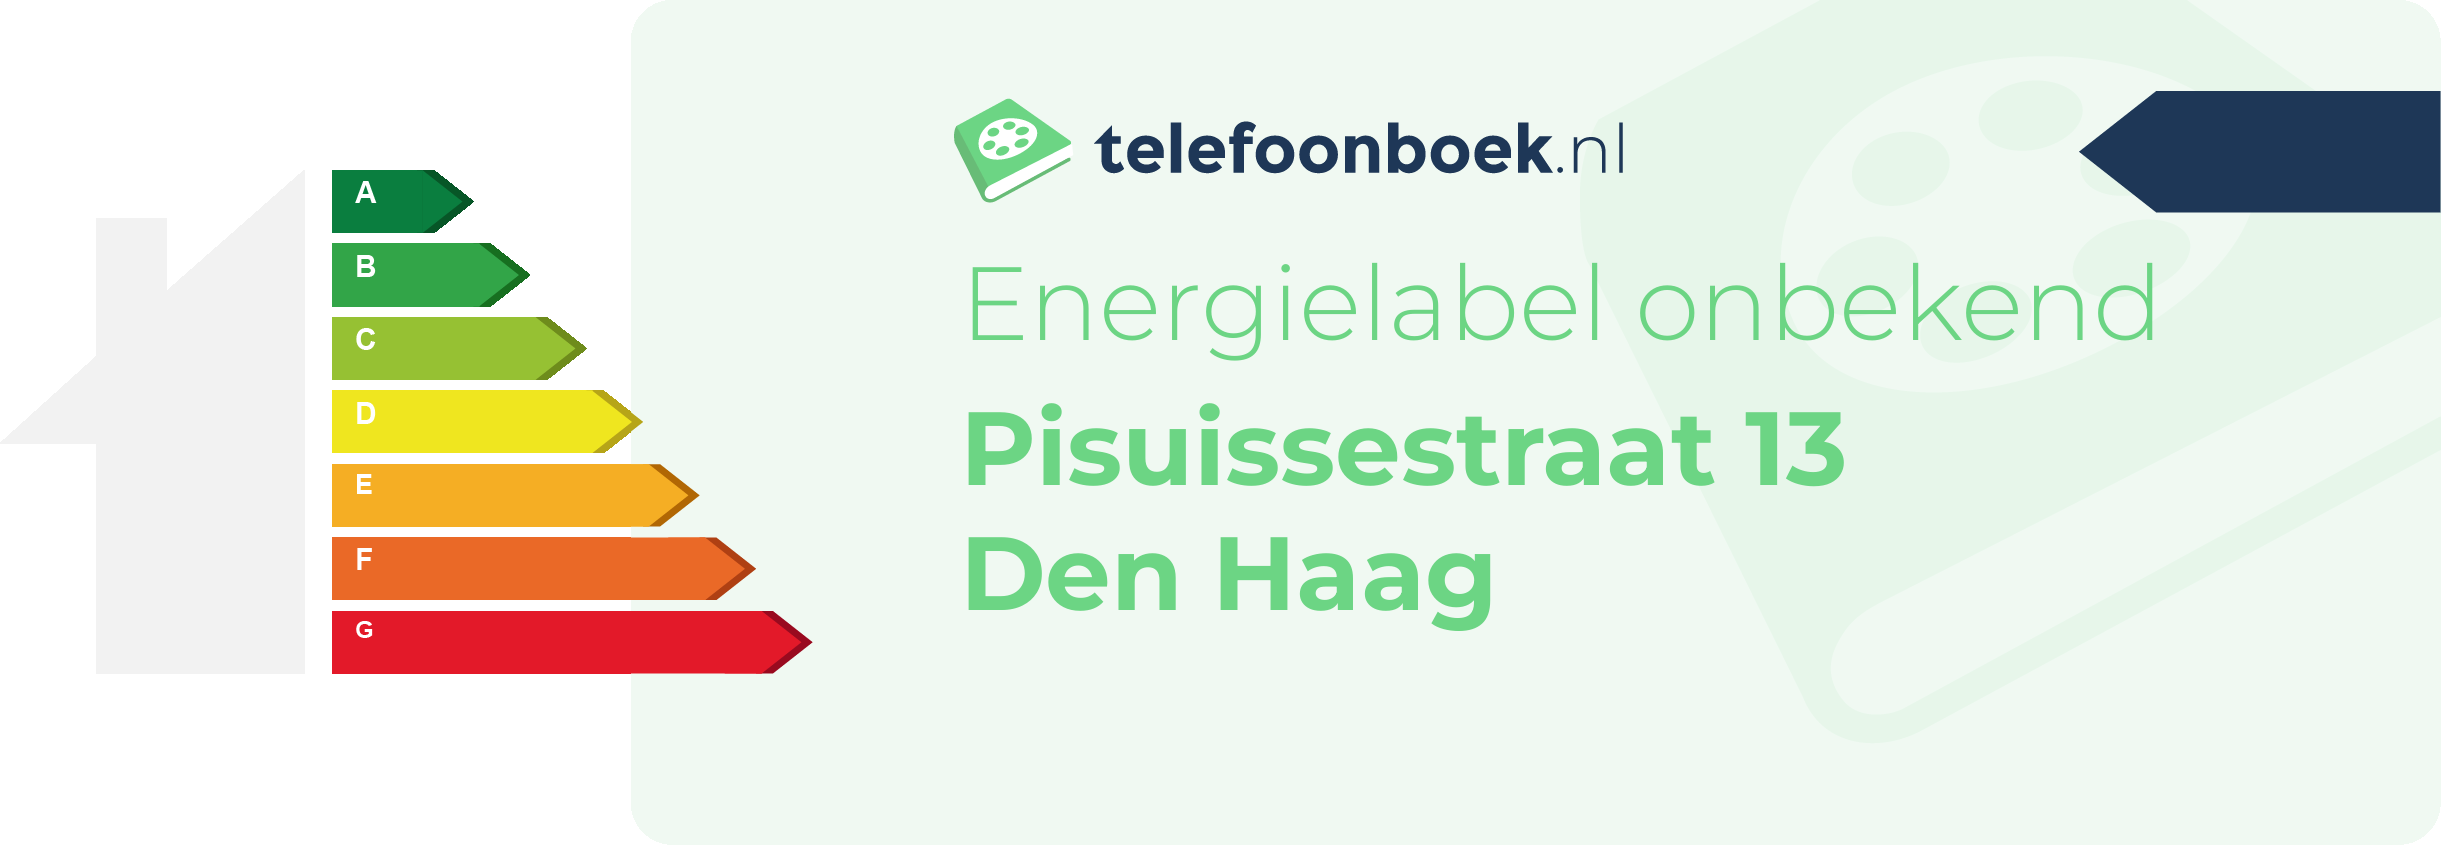 Energielabel Pisuissestraat 13 Den Haag